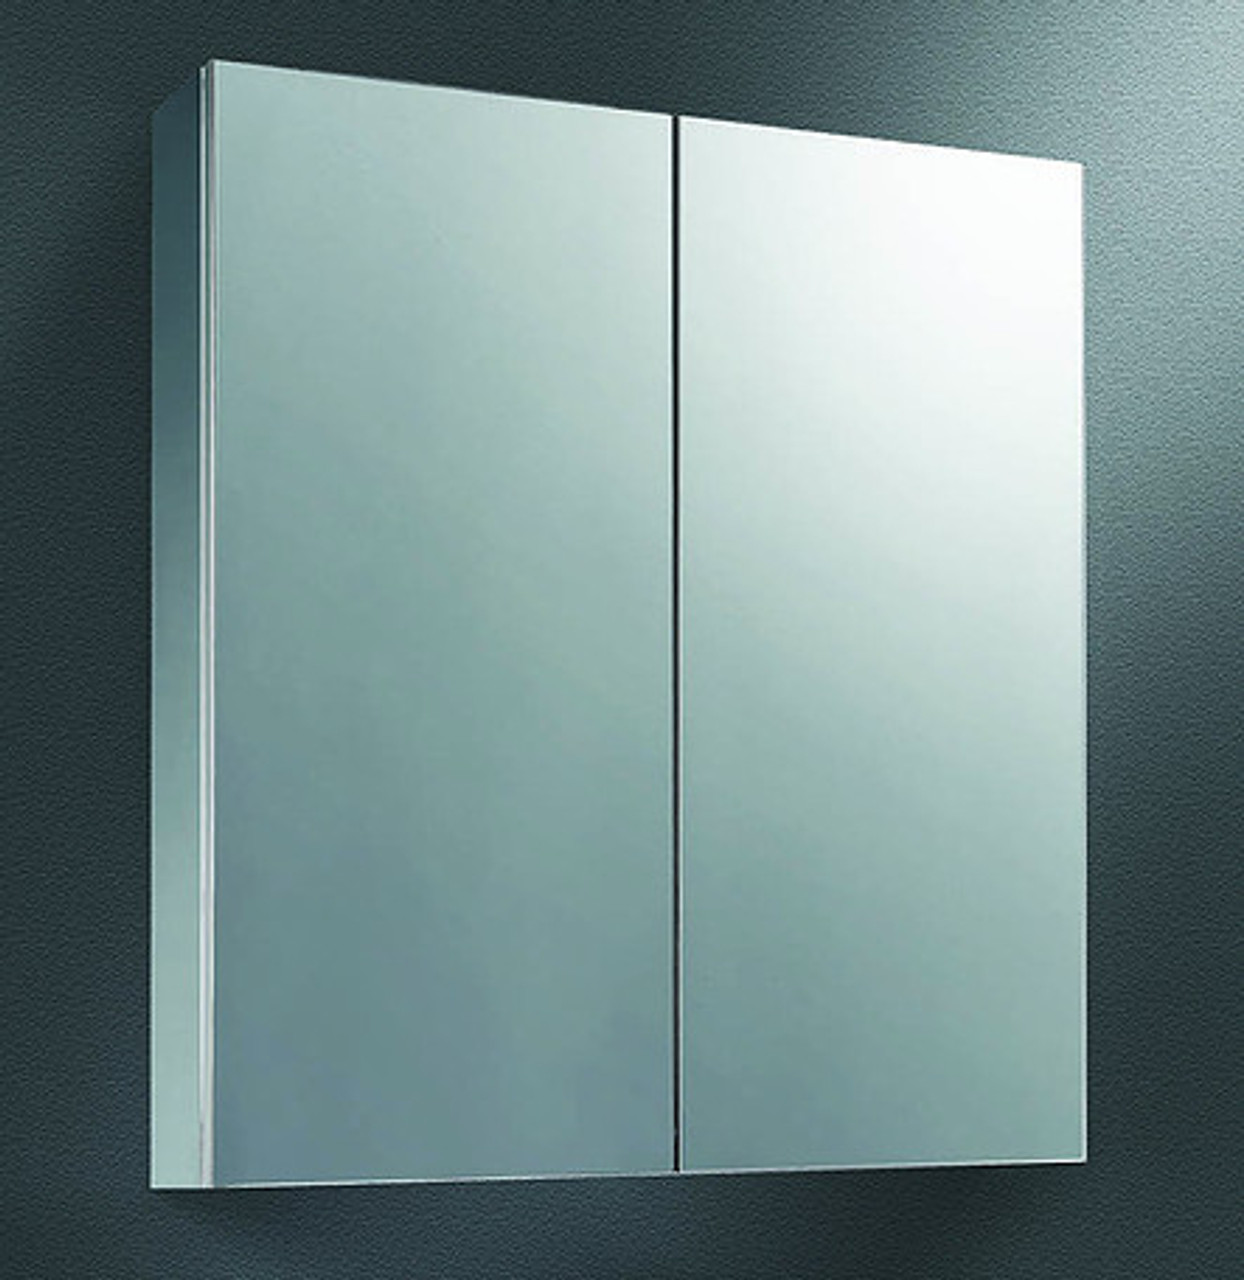 Ketcham single door medicine cabinets Stainless Steel Series -Dual Door